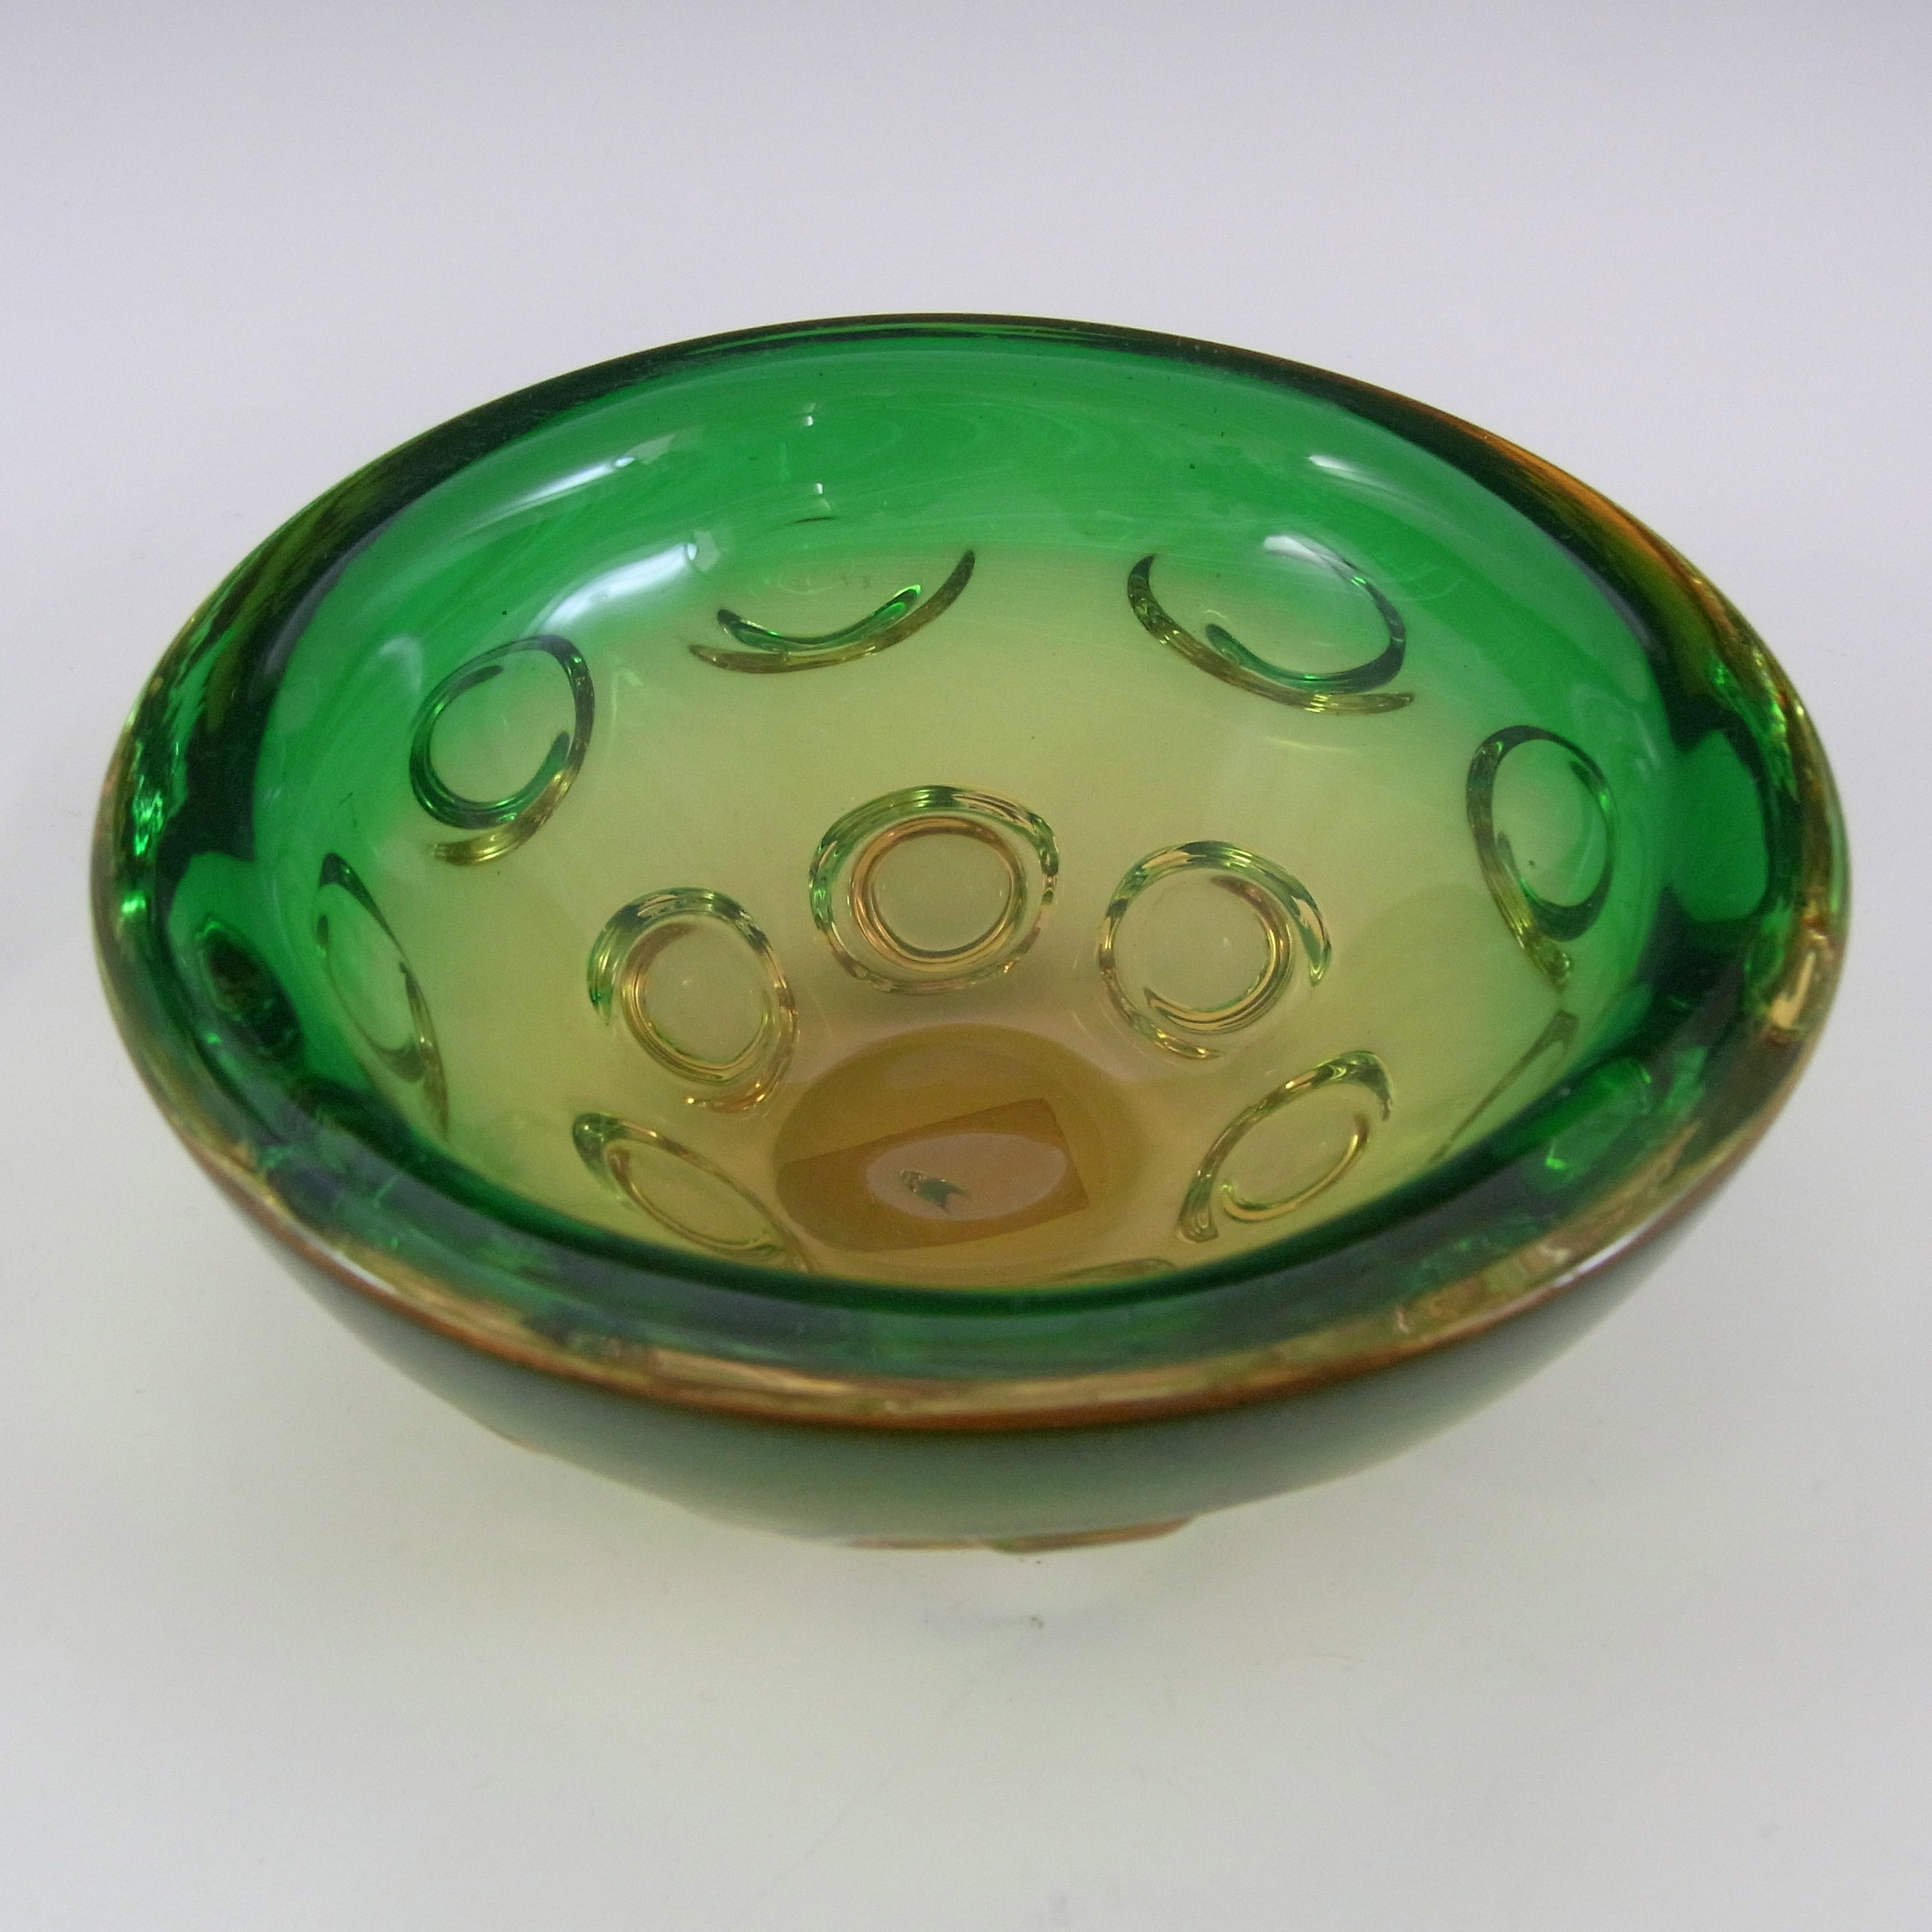 Vetro Artistico Veneziano Murano Green & Amber Glass Bowl - Click Image to Close